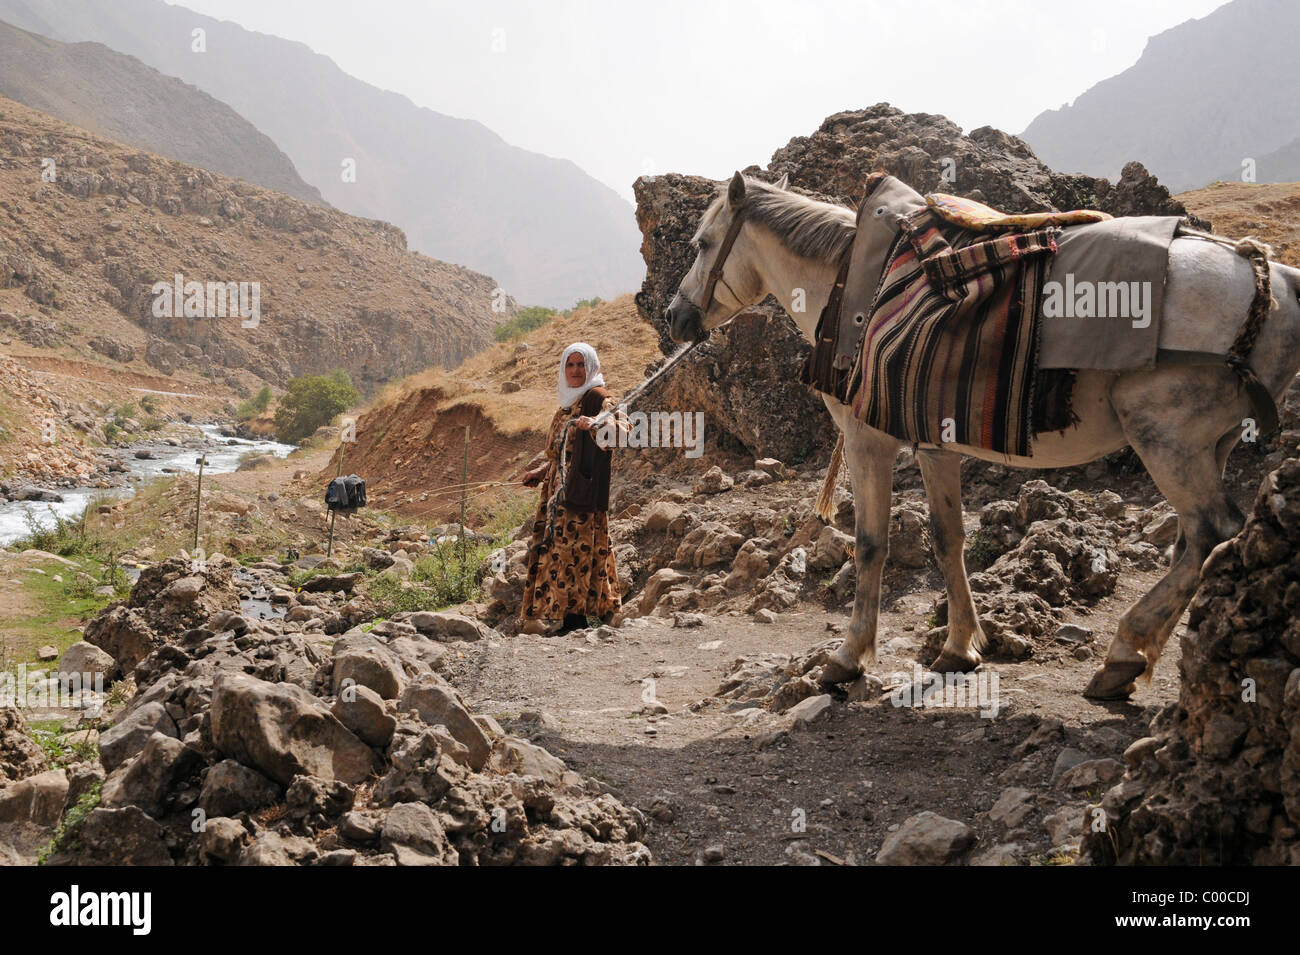 Una pastorella nomade curda che conduce il suo cavallo fuori da una grotta vicino al villaggio di Bahcesaray, nelle montagne di Zagros della Turchia sudorientale. Foto Stock